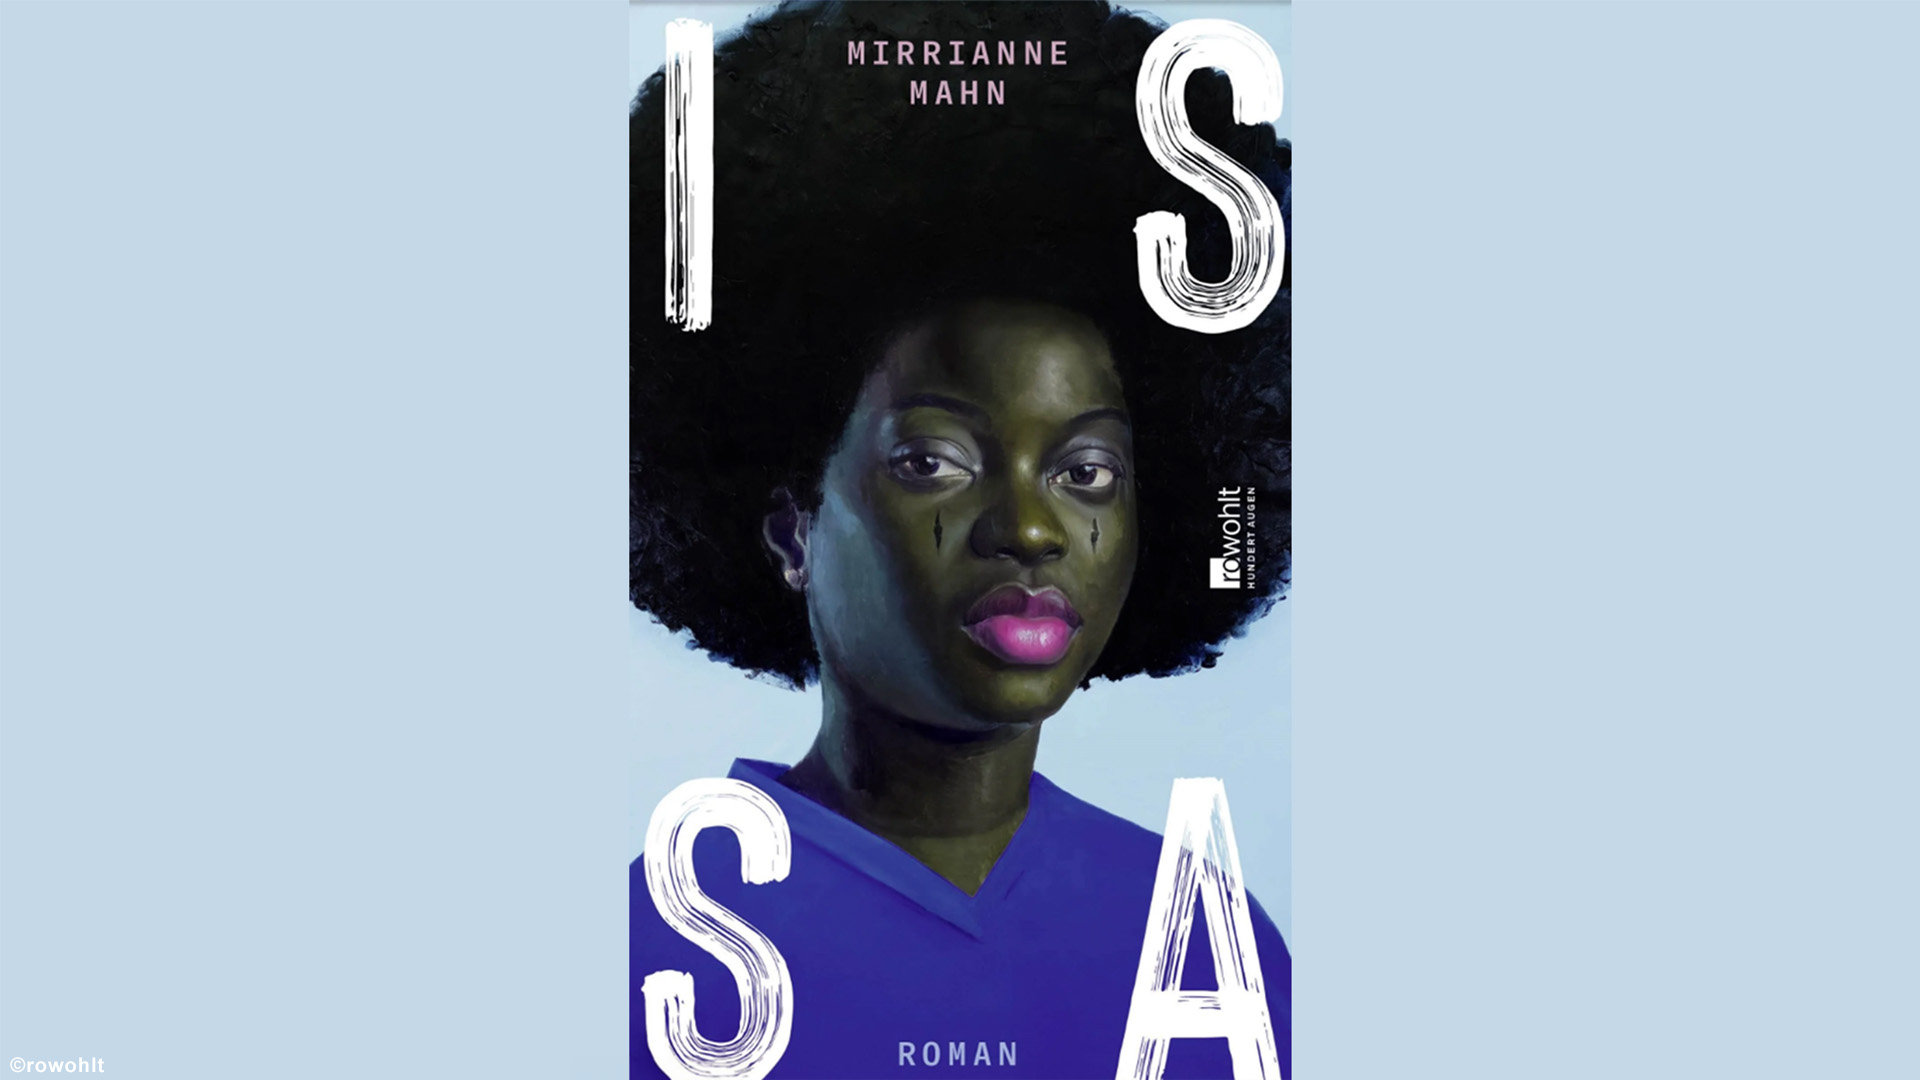 ISSA - Der Debütroman von Mirrianne Mahn